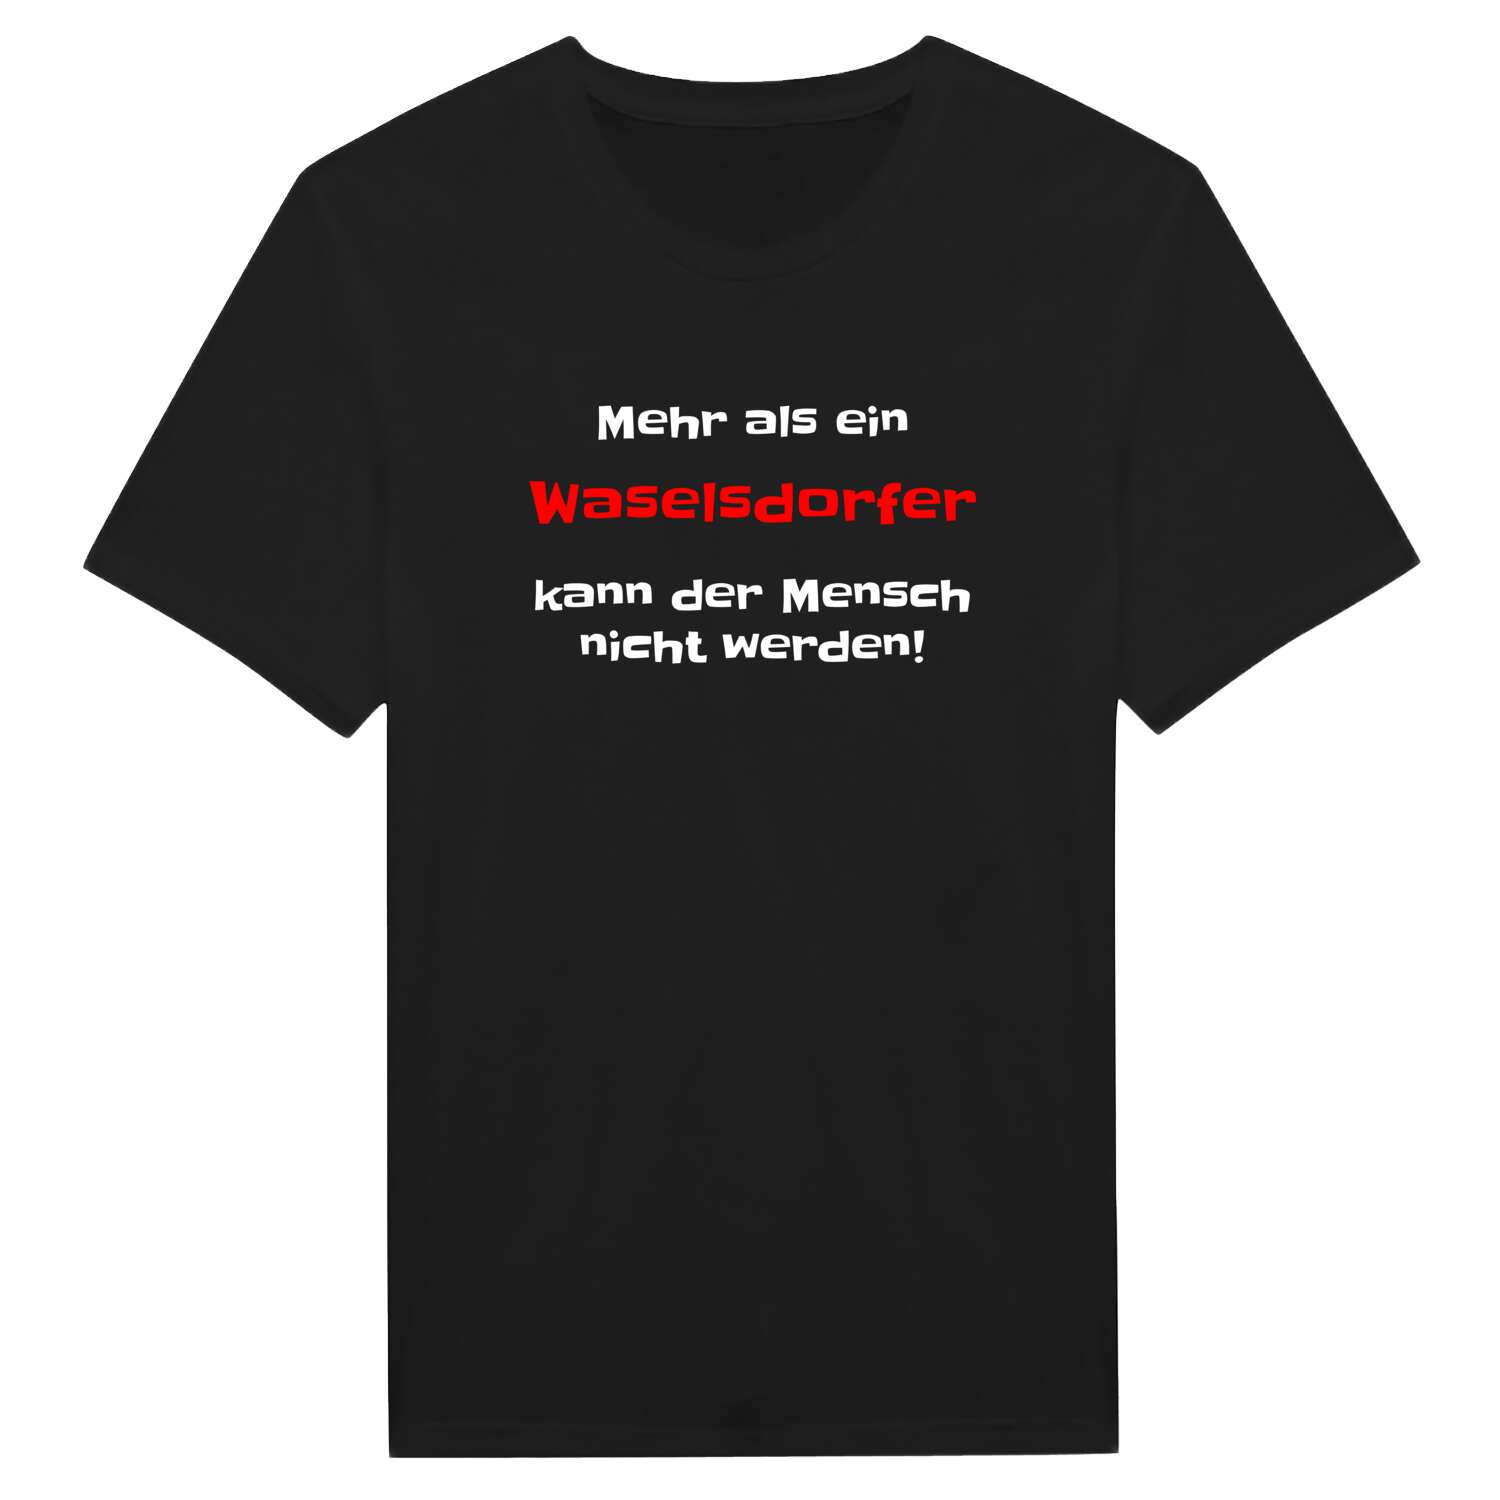 Waselsdorf T-Shirt »Mehr als ein«